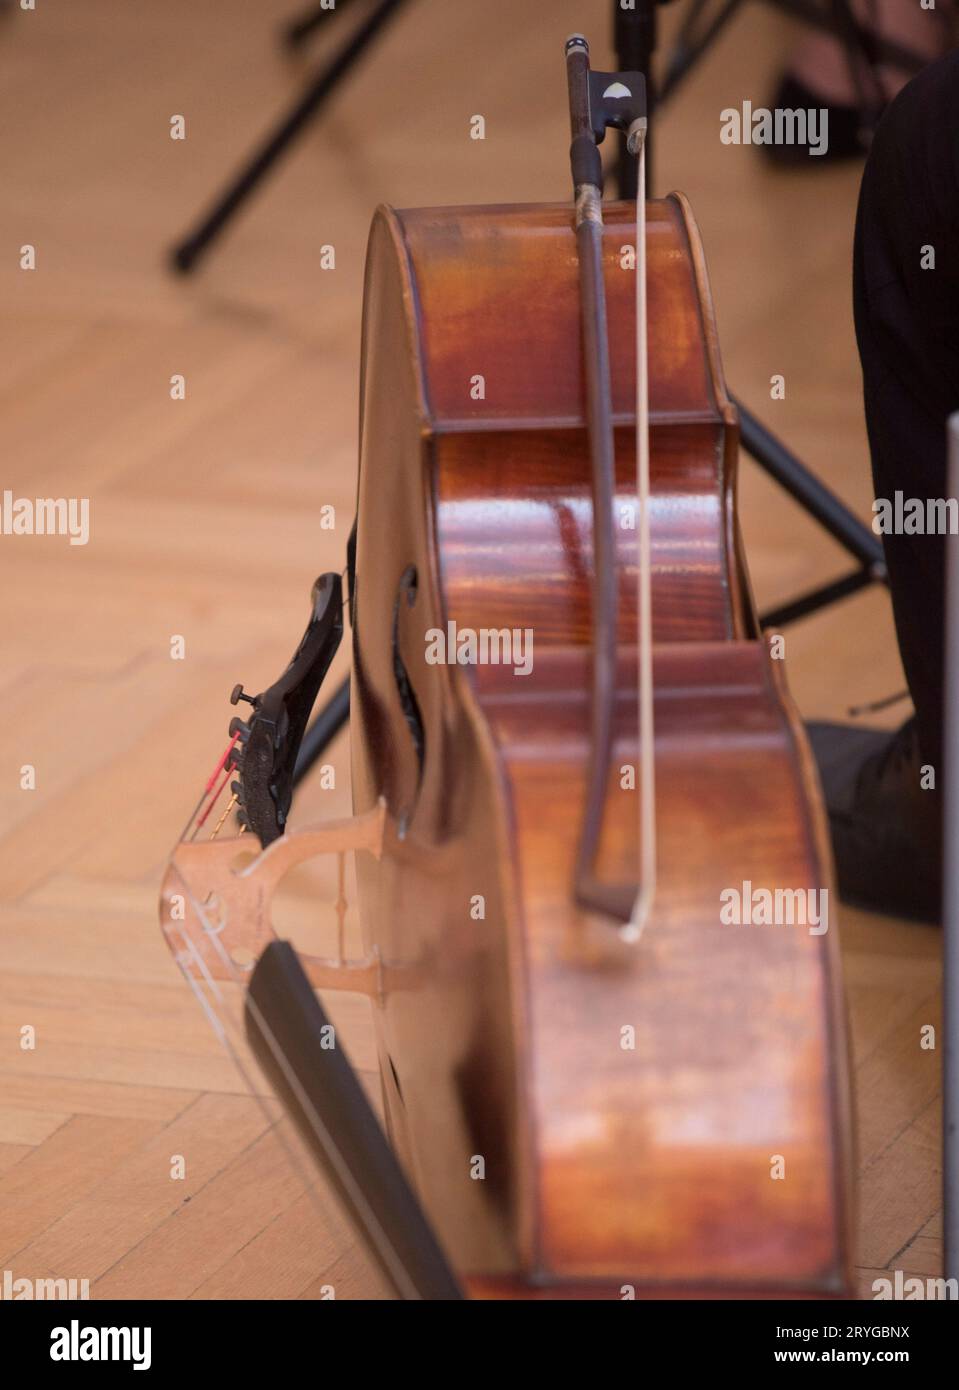 Violoncelle ou violoncelle, instrument à cordes joué avec un arc Banque D'Images